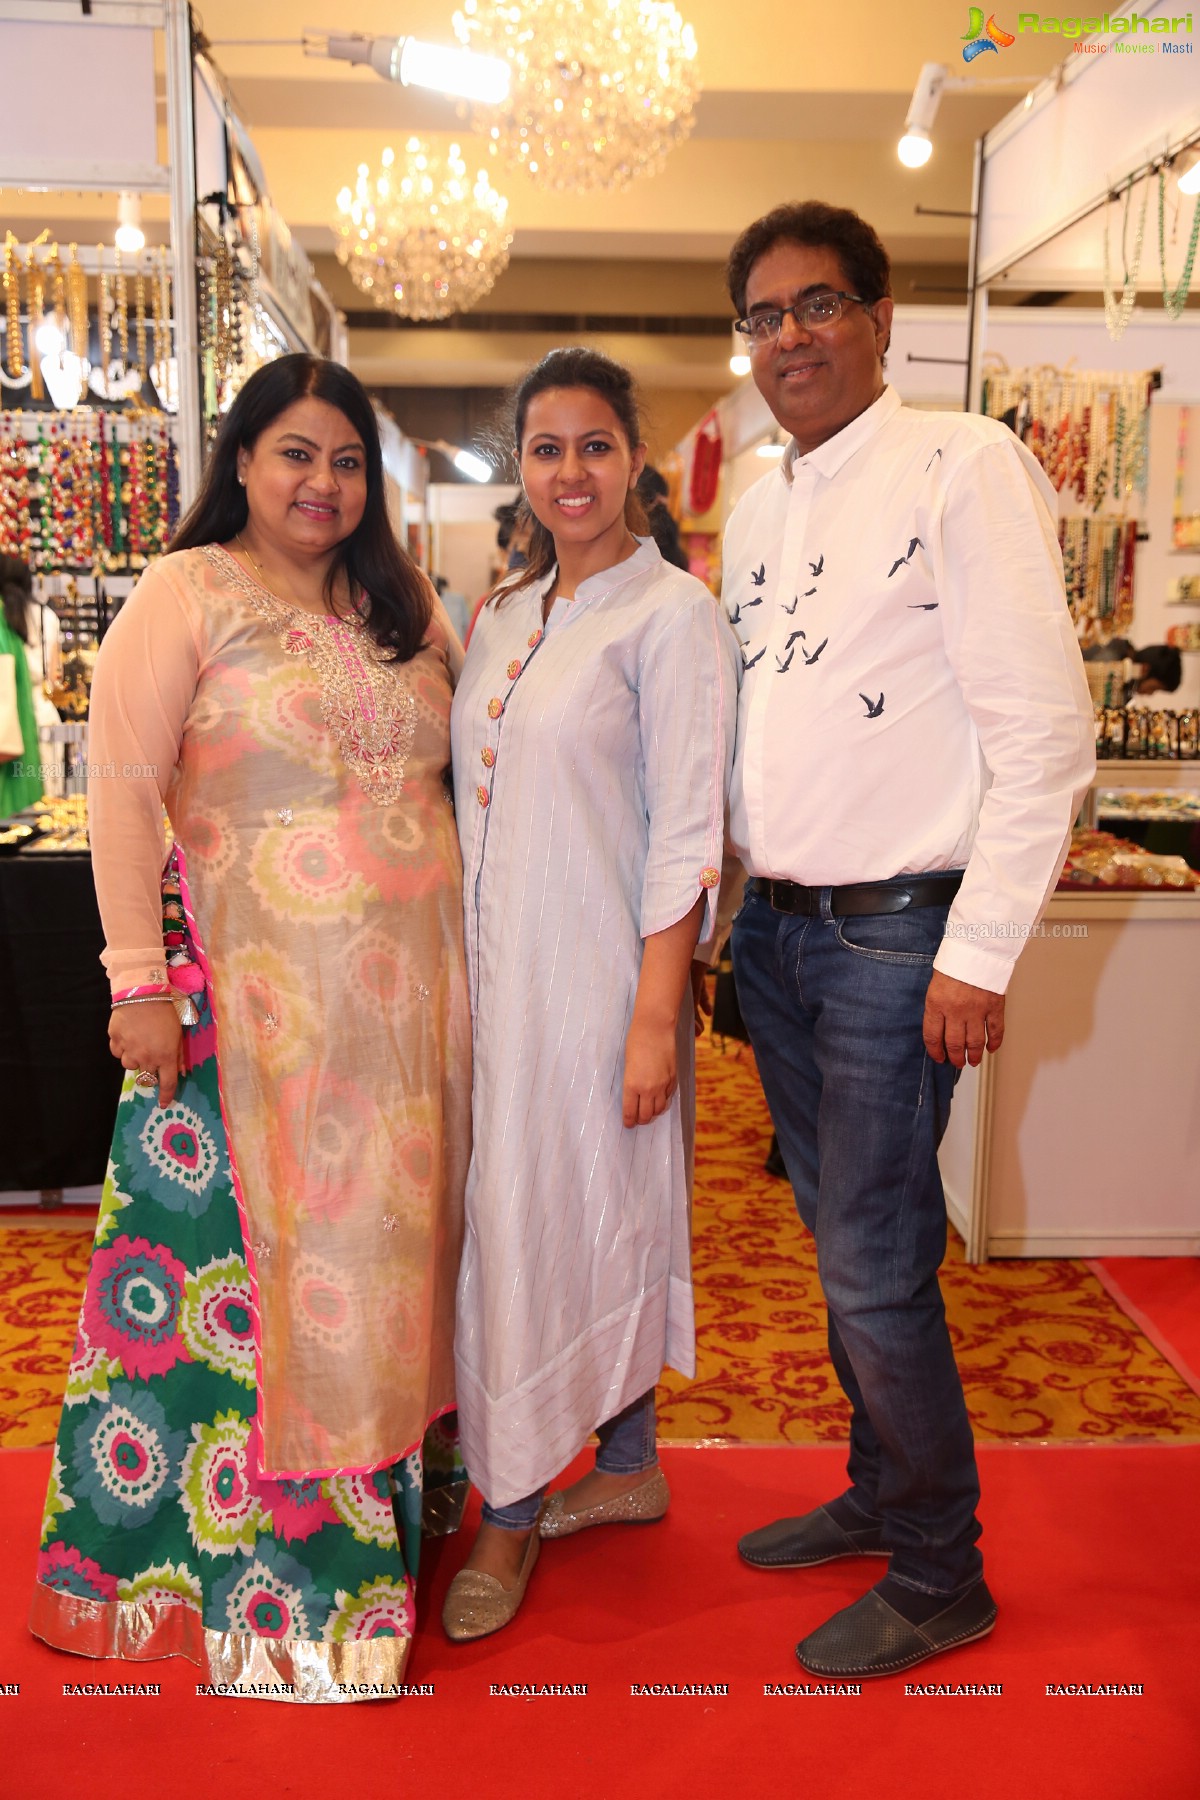 Label Love Exhibition & Sale Begins at Taj Deccan, Hyderabad